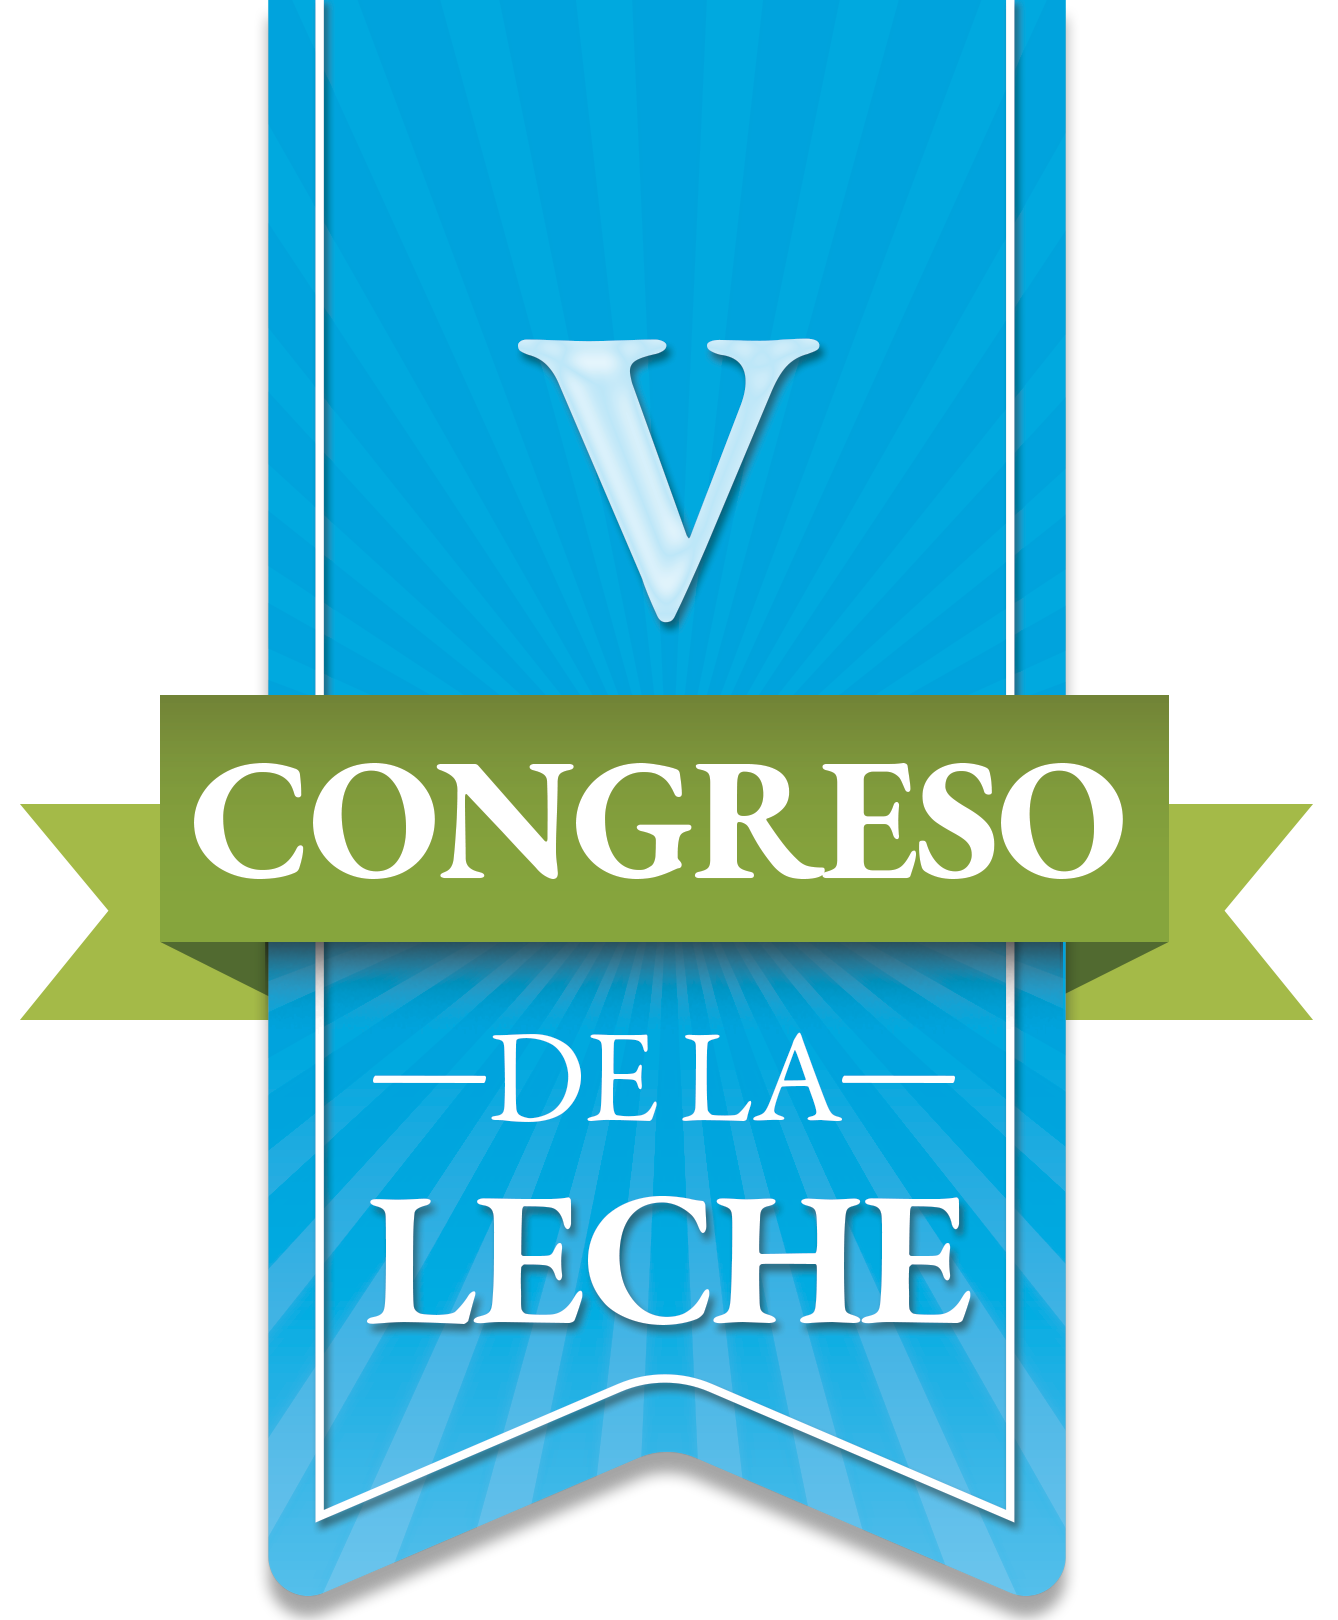 Congreso lechero CAHLE Olanchito 2017